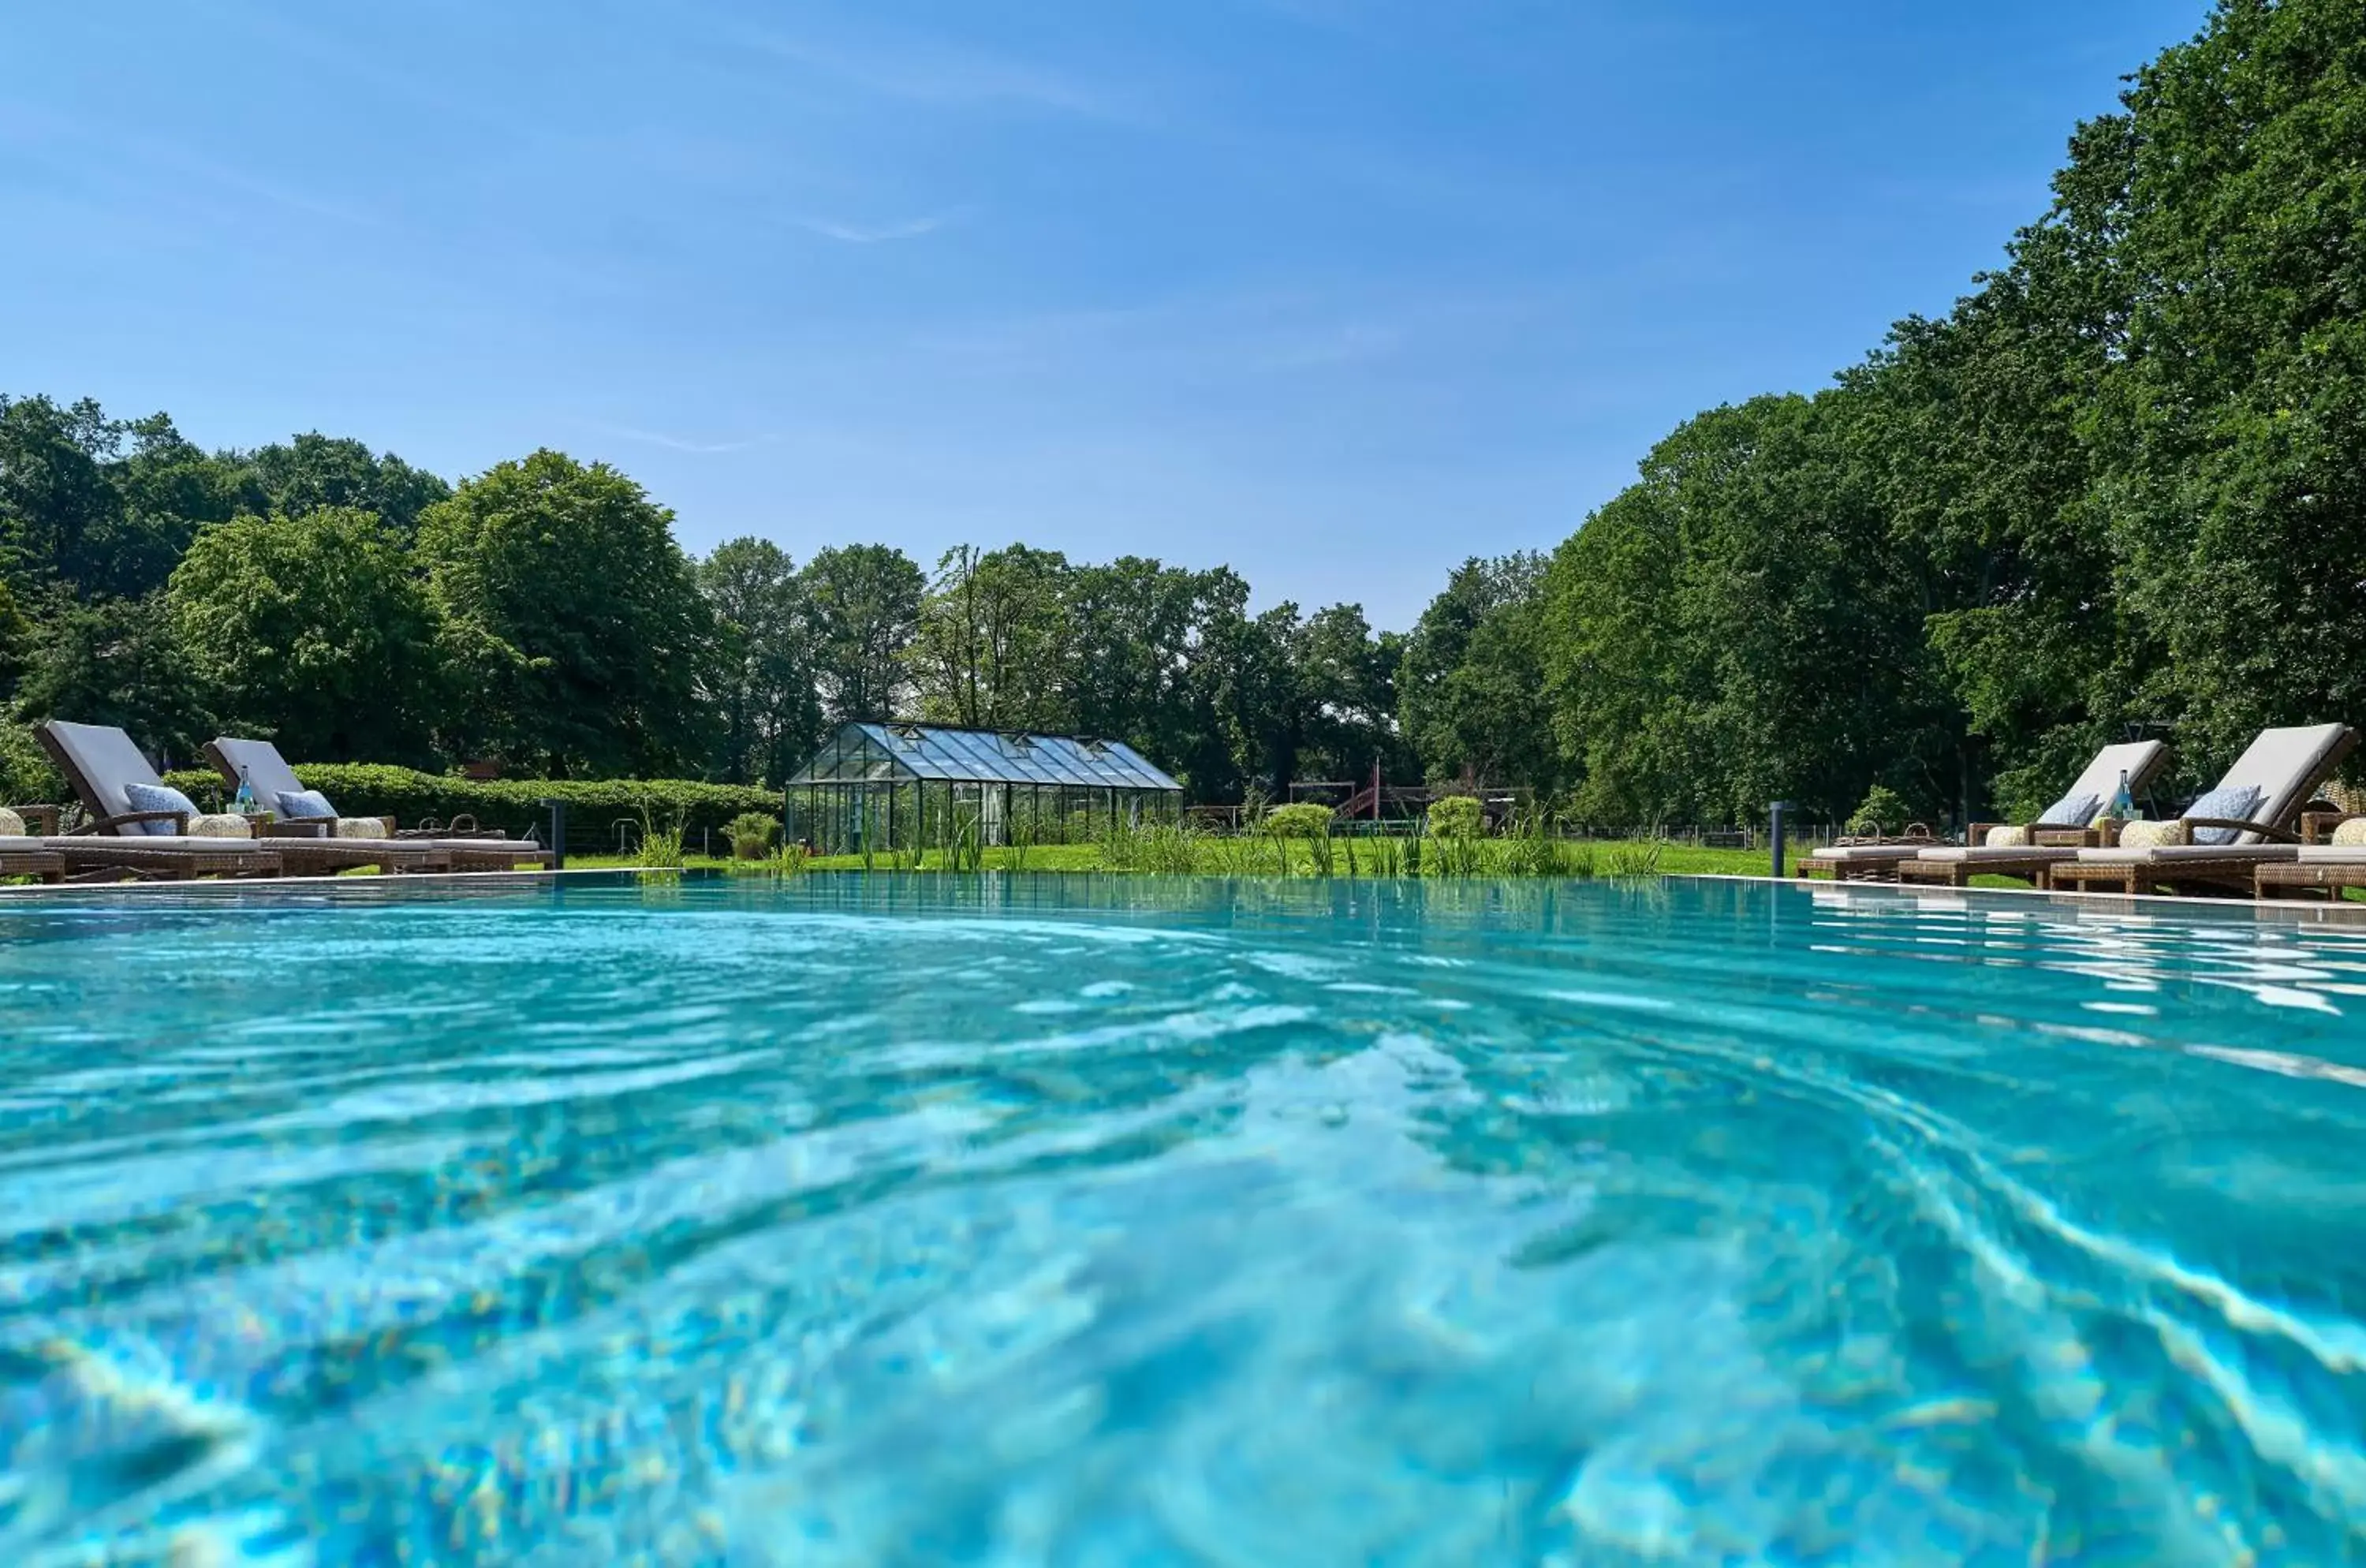 Swimming Pool in Romantik Hotel Jagdhaus Eiden am See